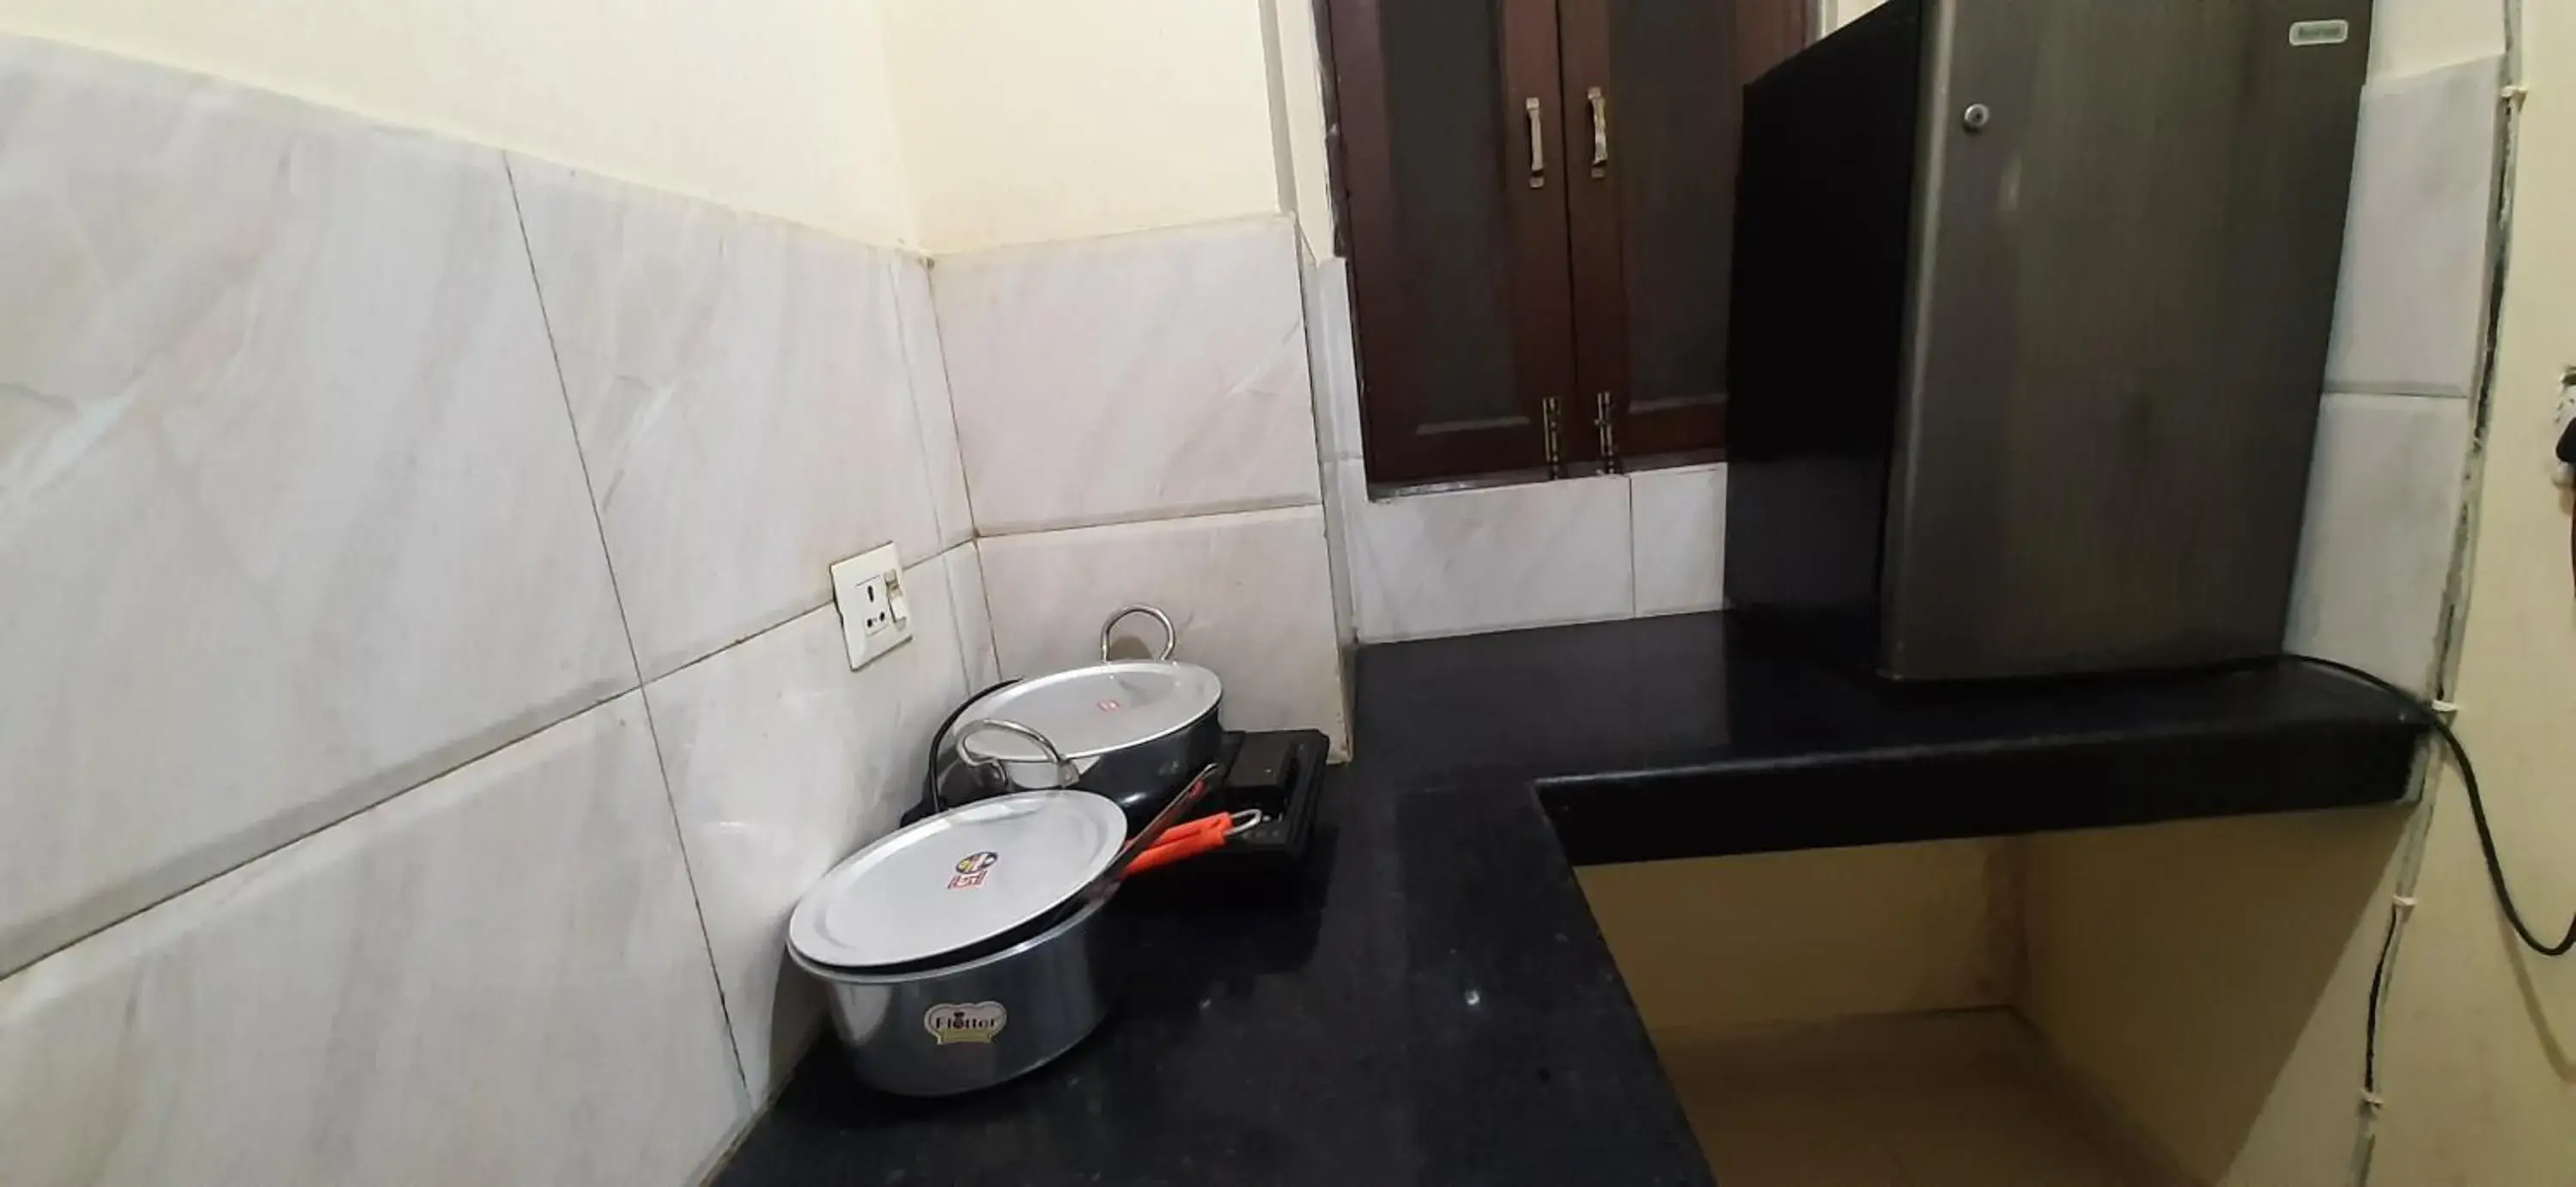 Coffee/tea facilities, Bathroom in Hotel Kundan Palace